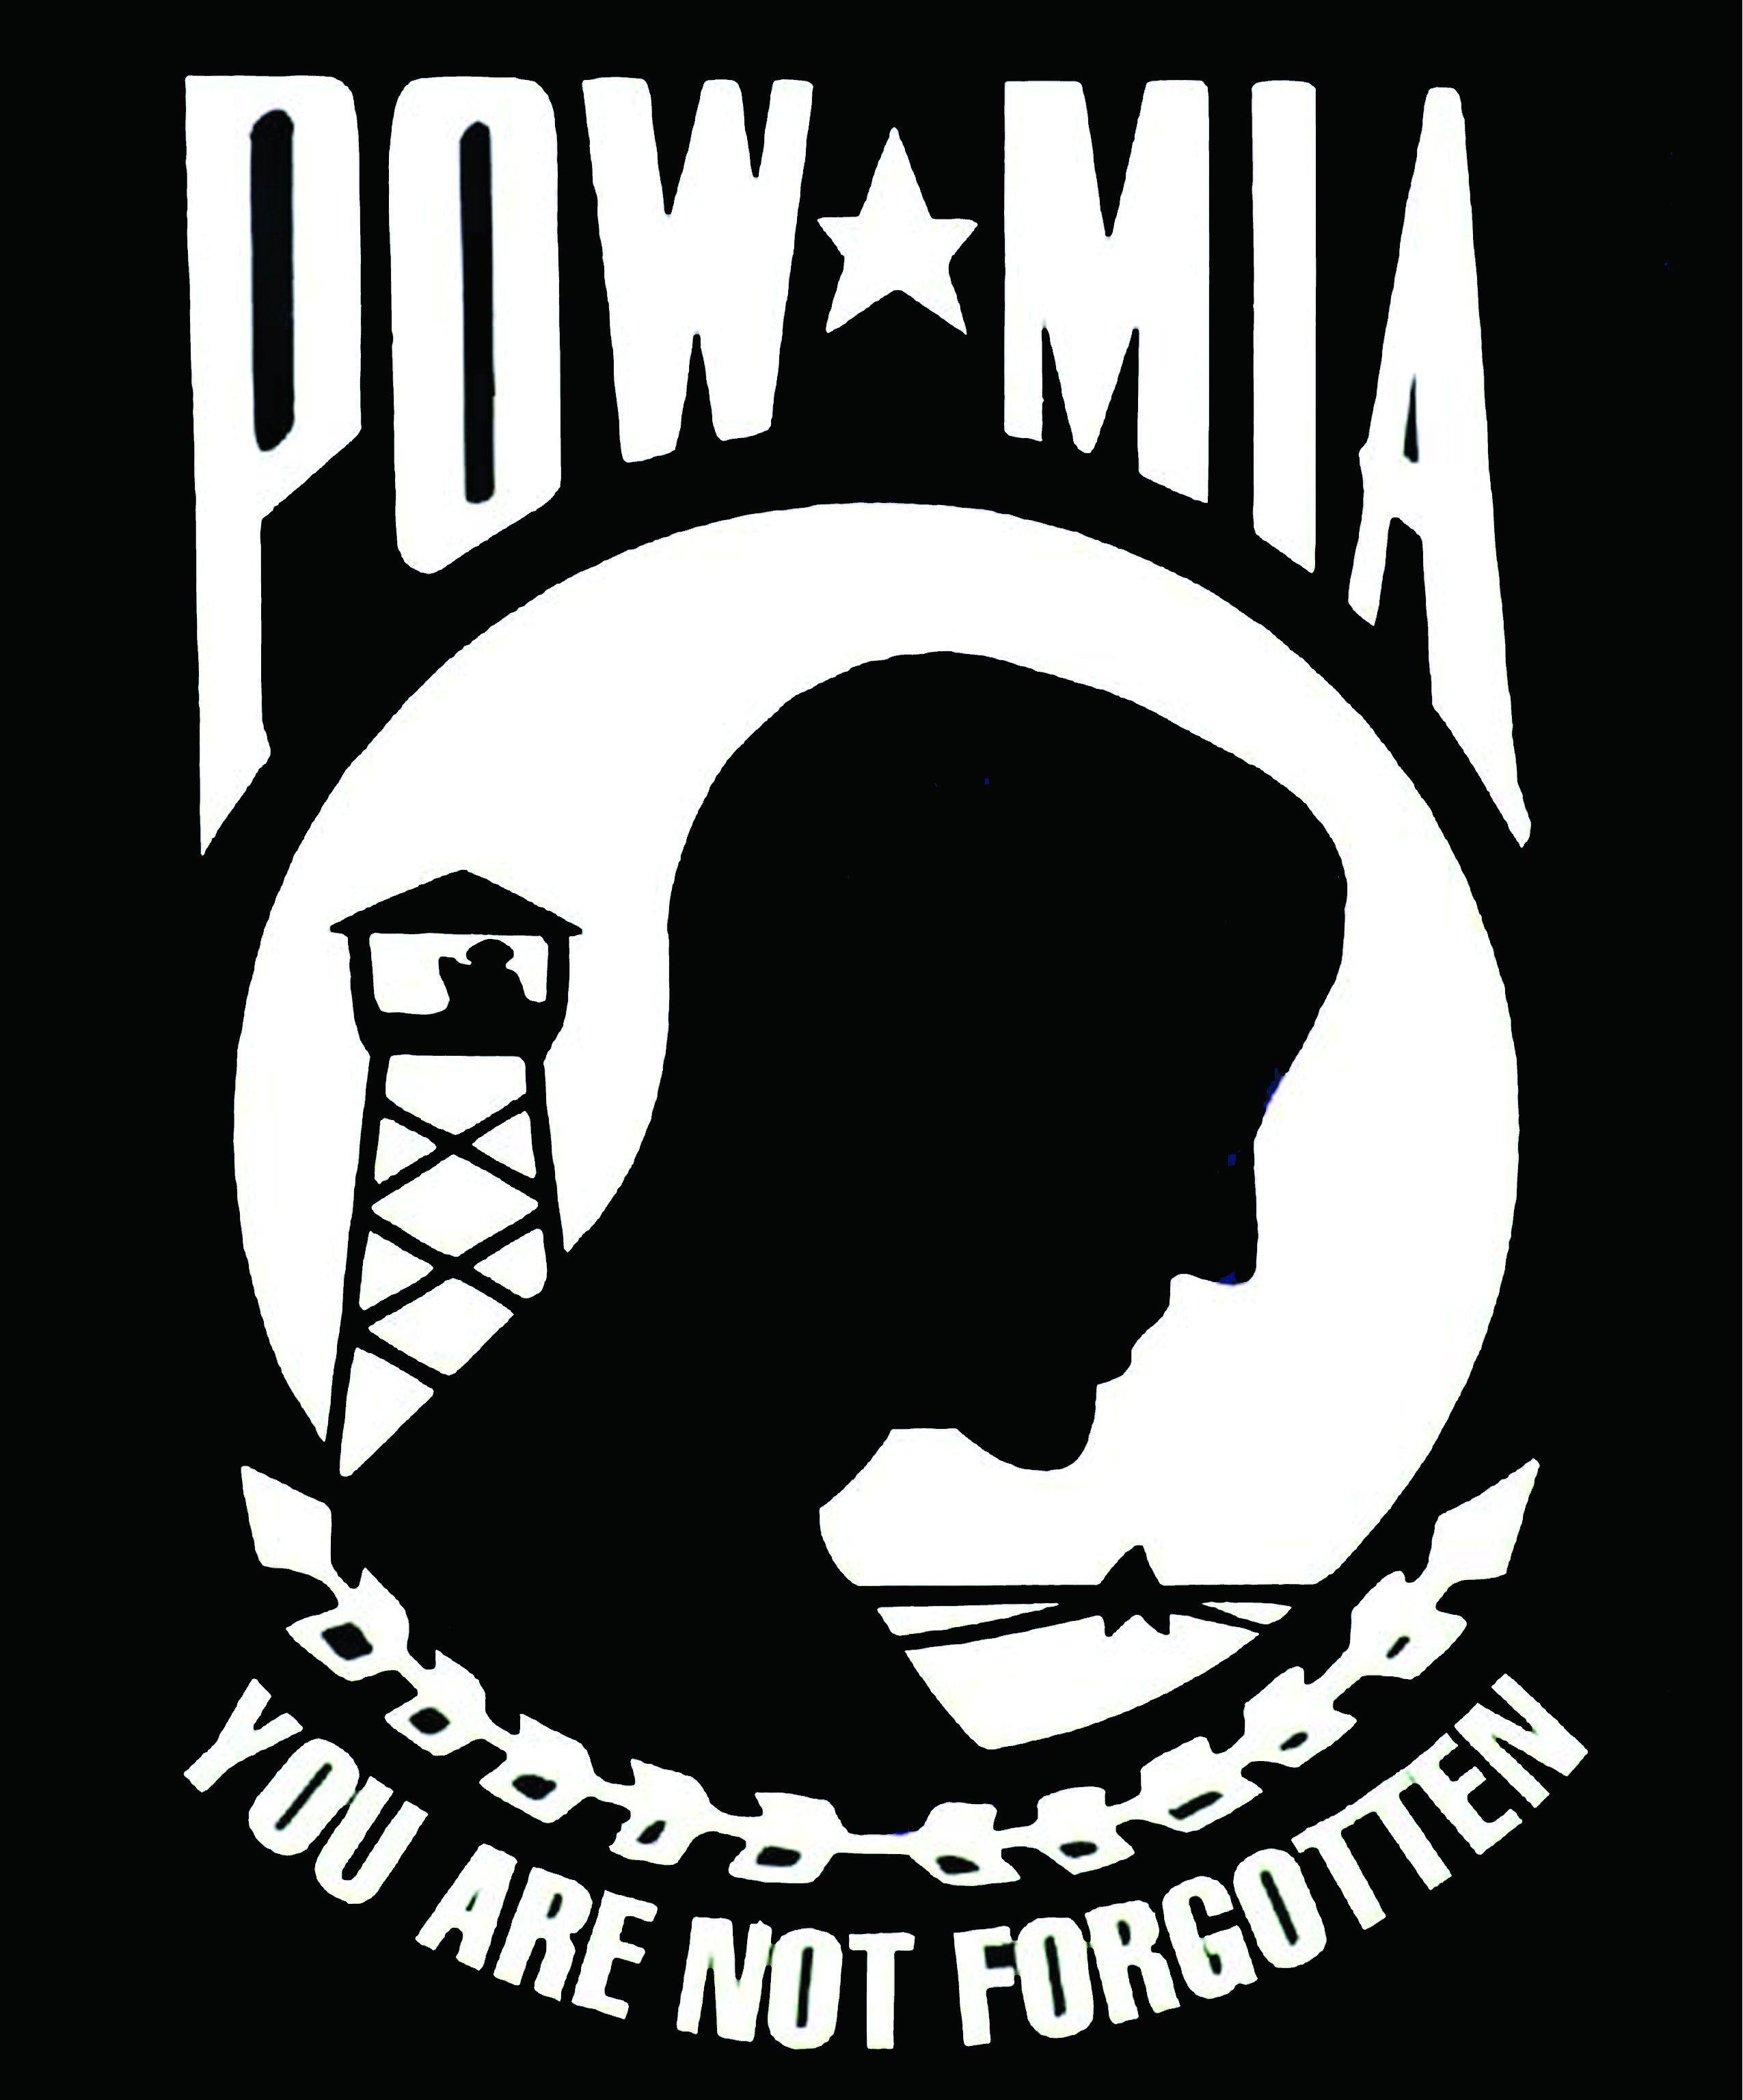 POW Mia Flag Wallpapers - Top Free POW